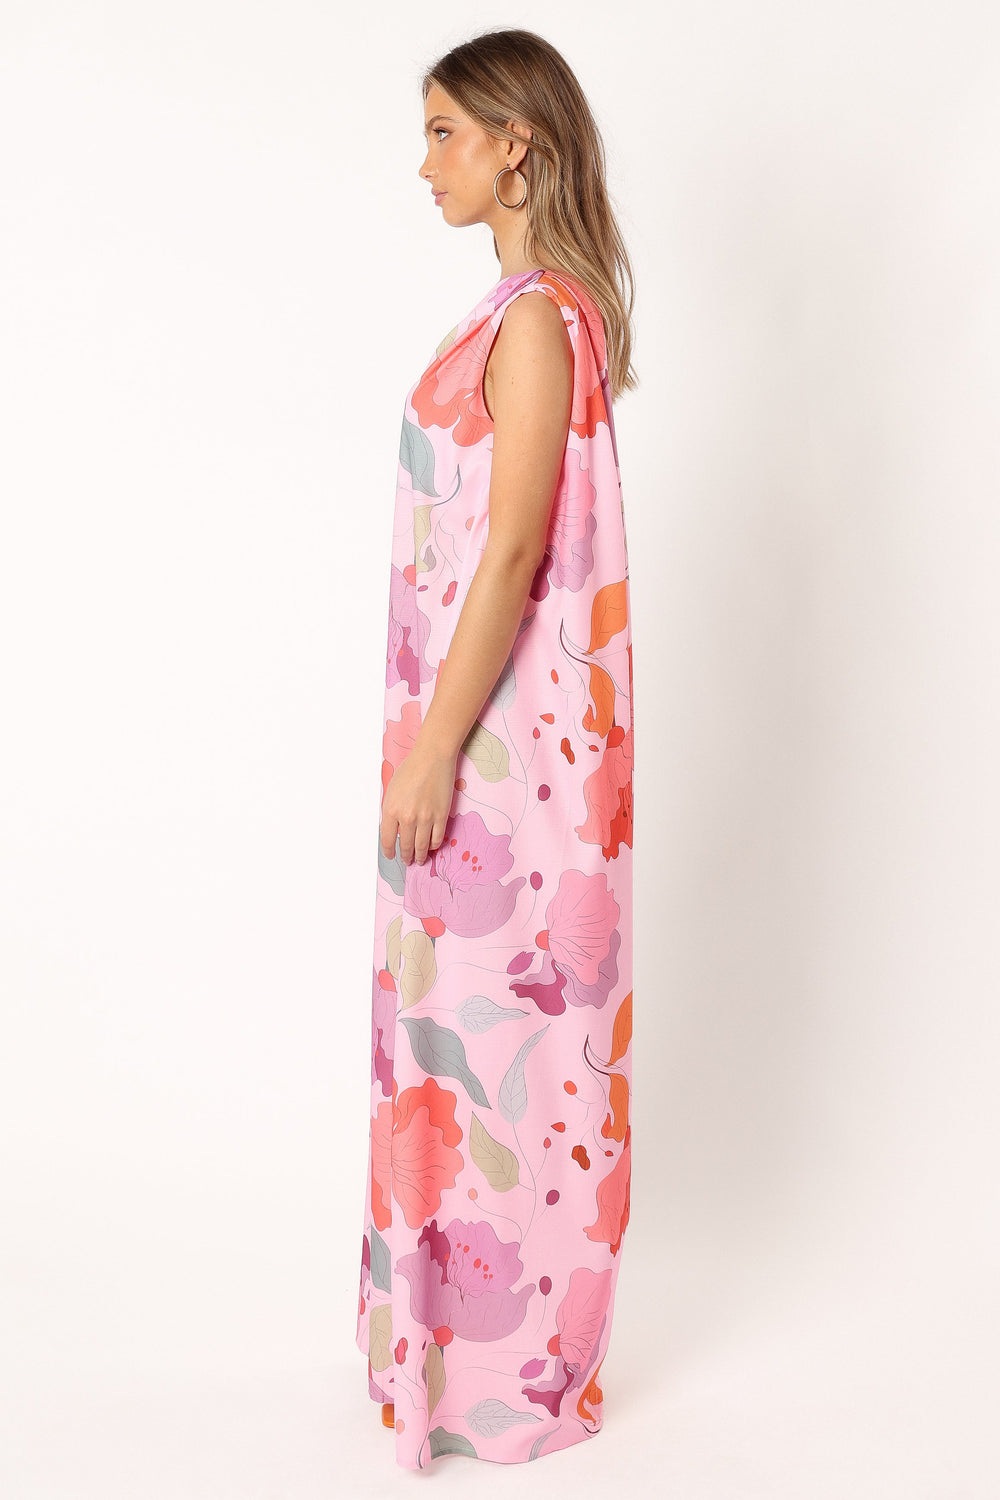 Petal and Pup USA DRESSES Tillie One Shoulder Maxi Dress - Pink Floral